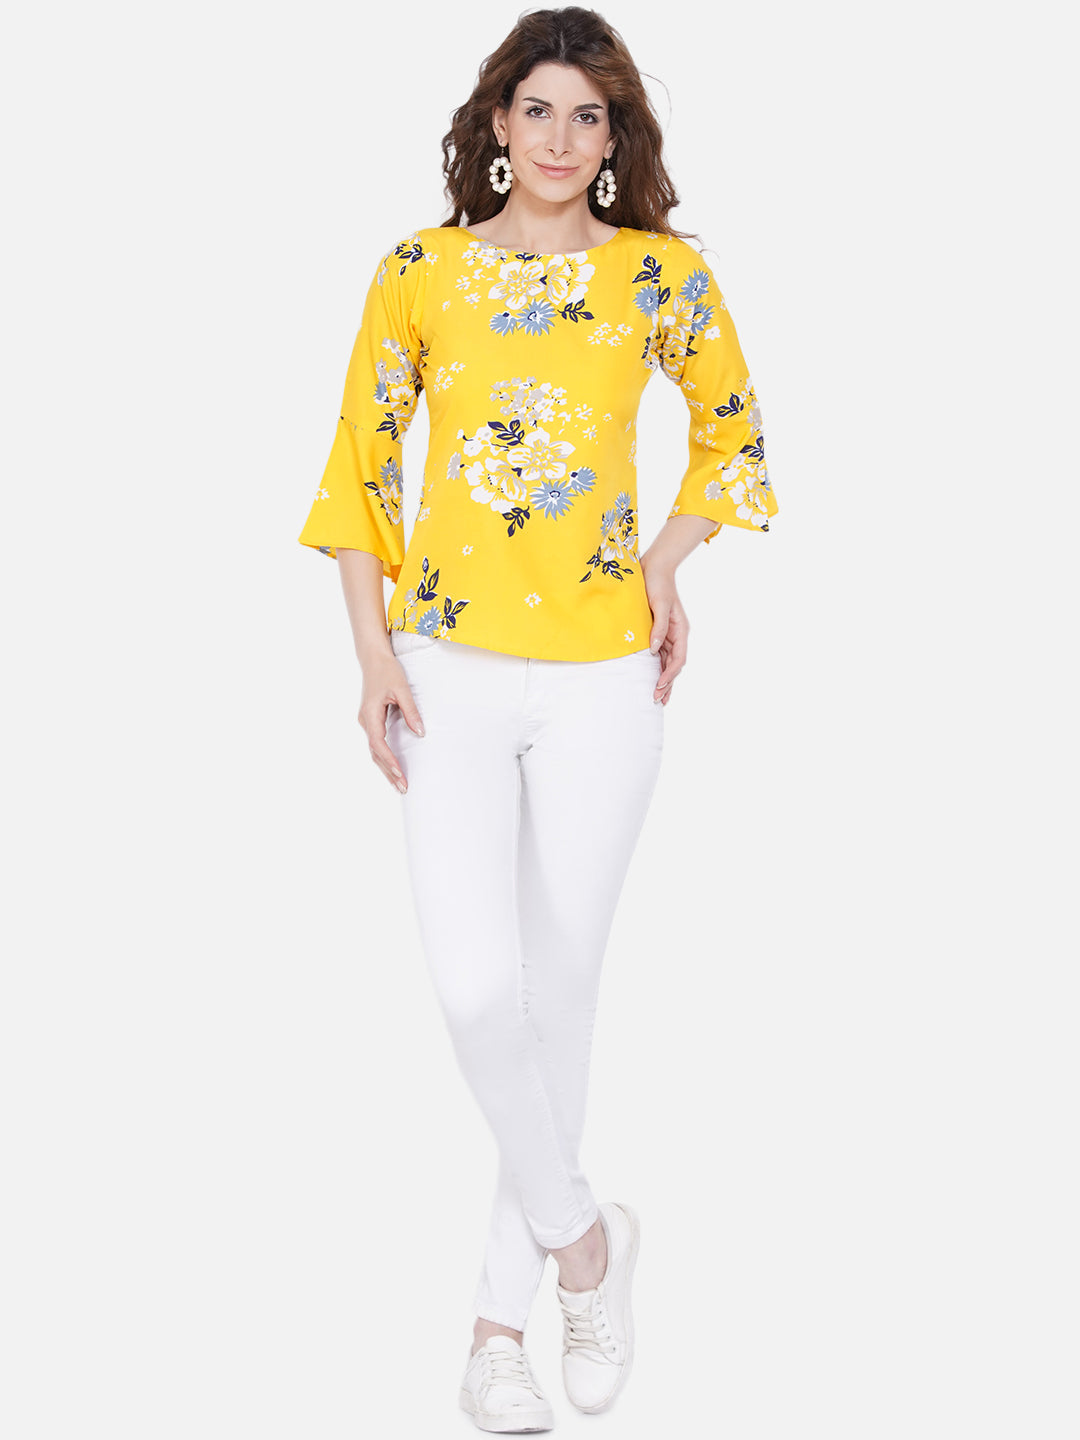 Women's Yellow Floral Print Crepe Top - Wahe-Noor